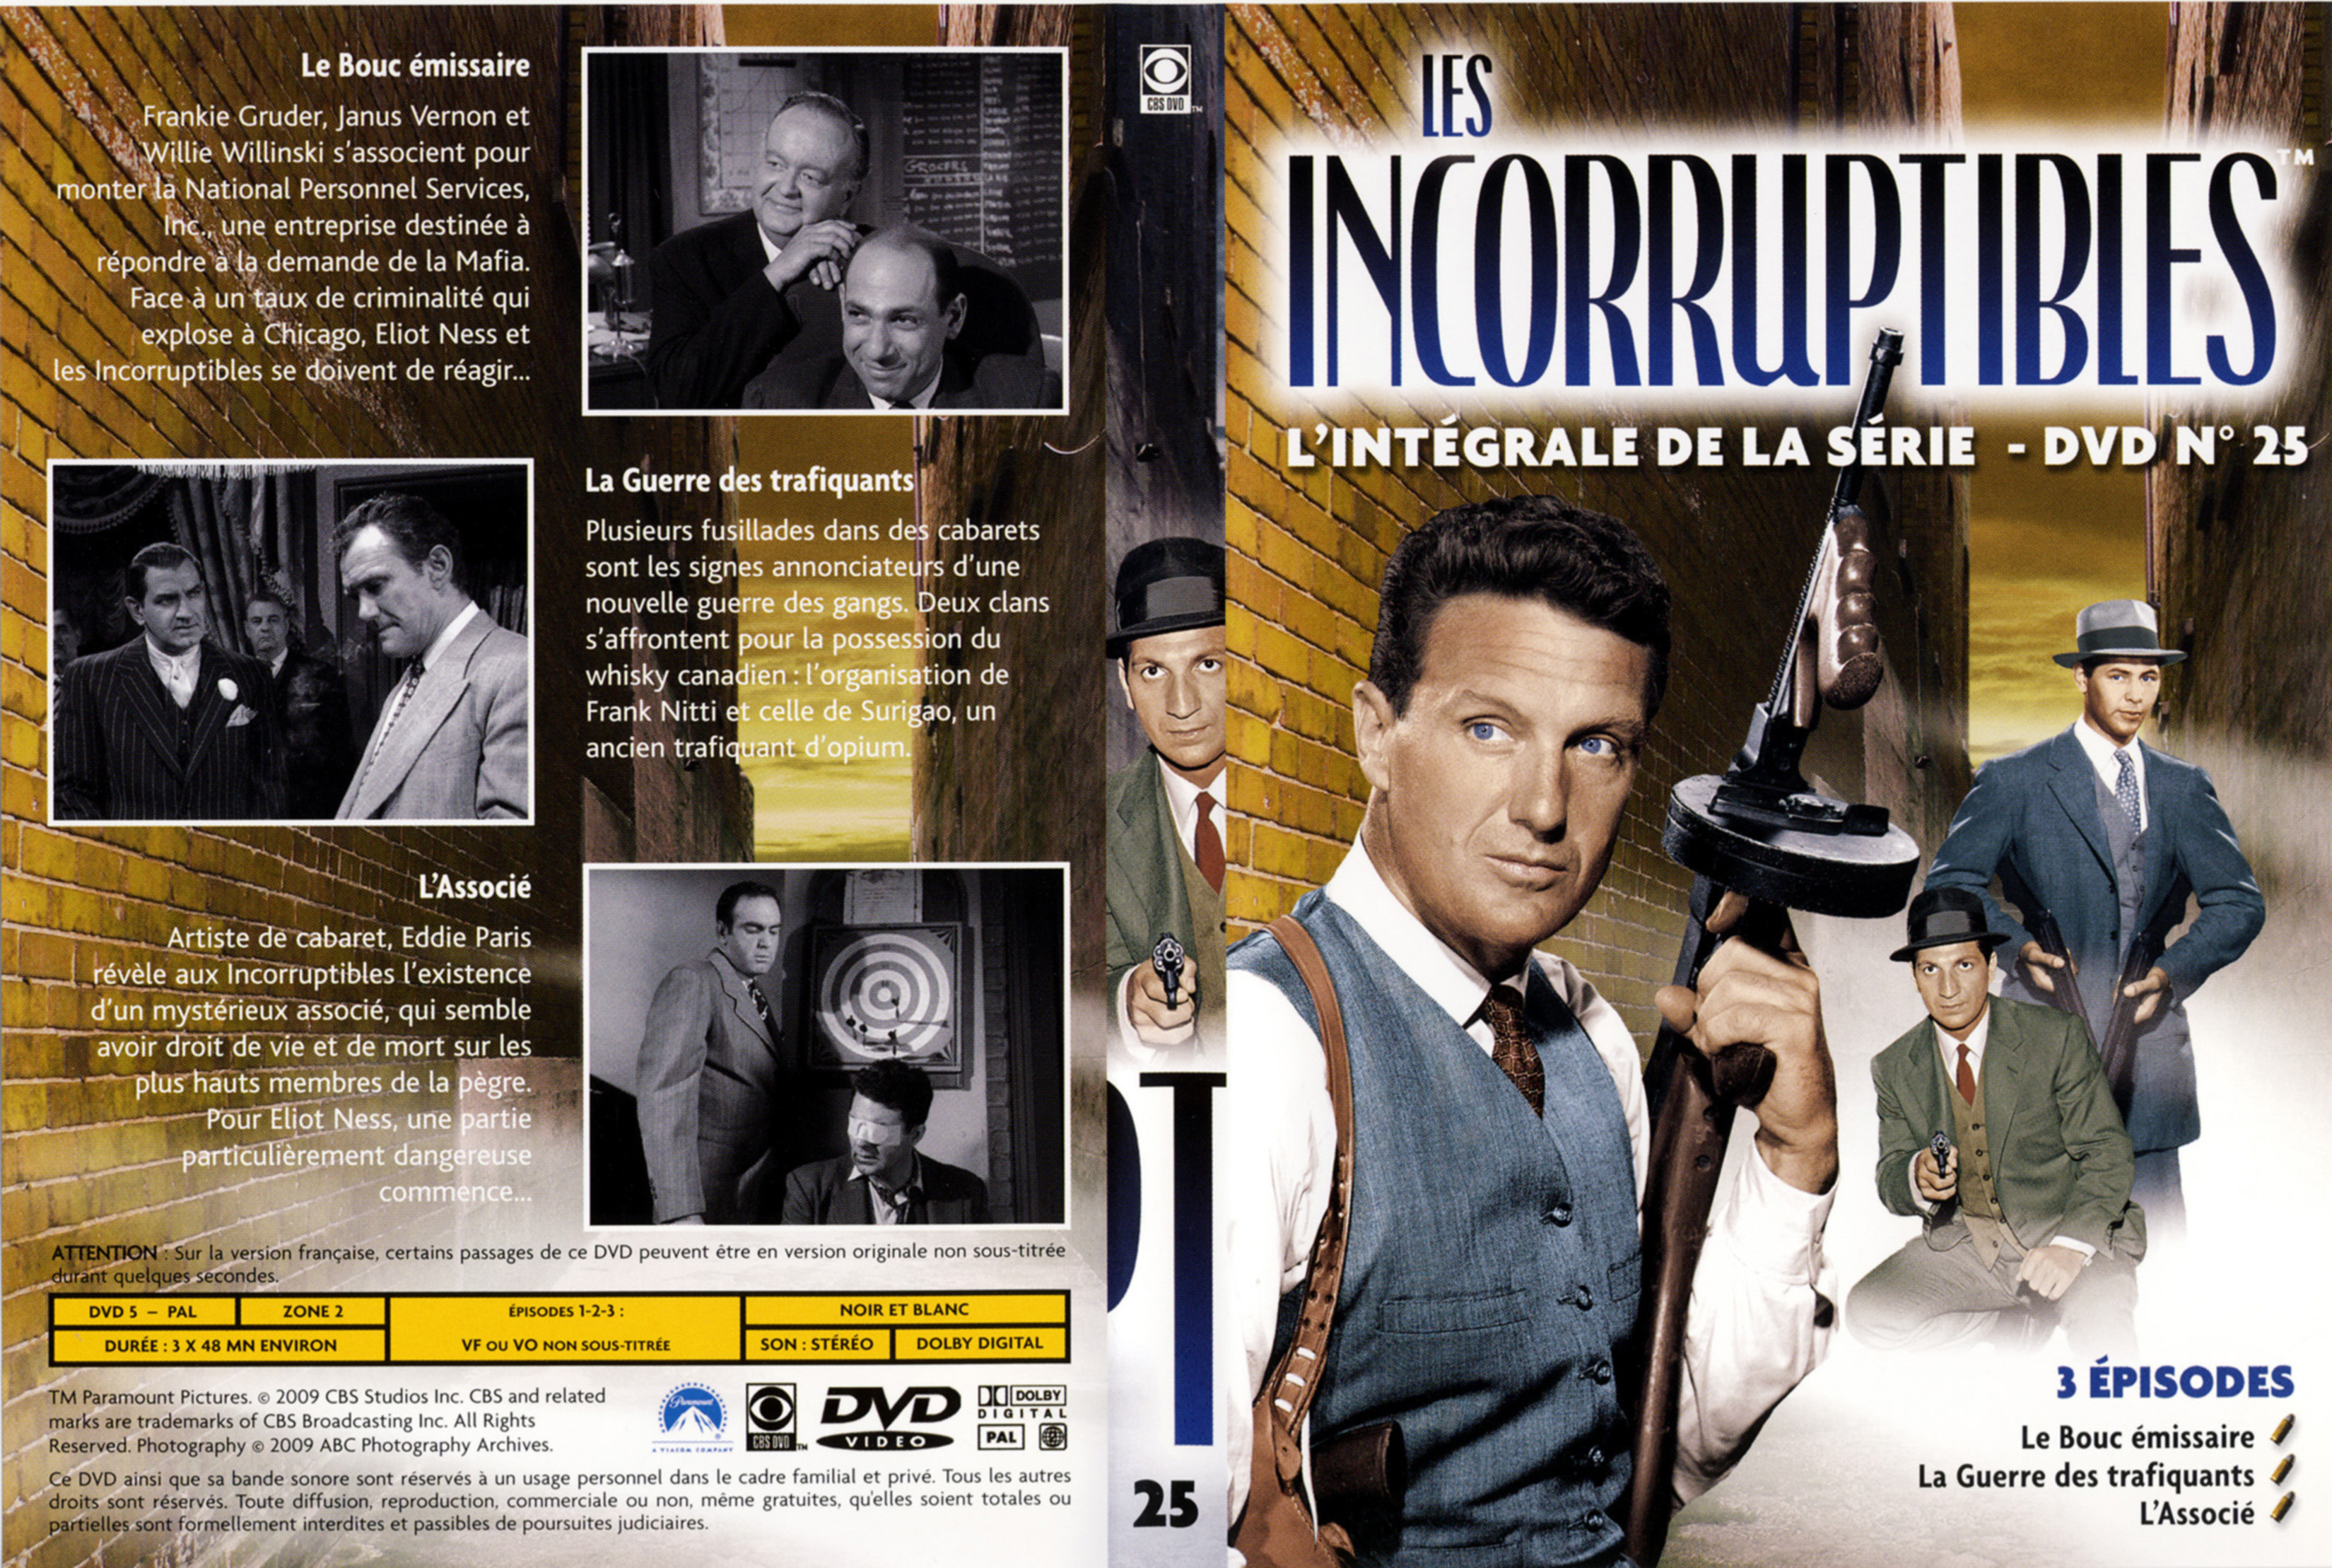 Jaquette DVD Les incorruptibles intgrale DVD 25